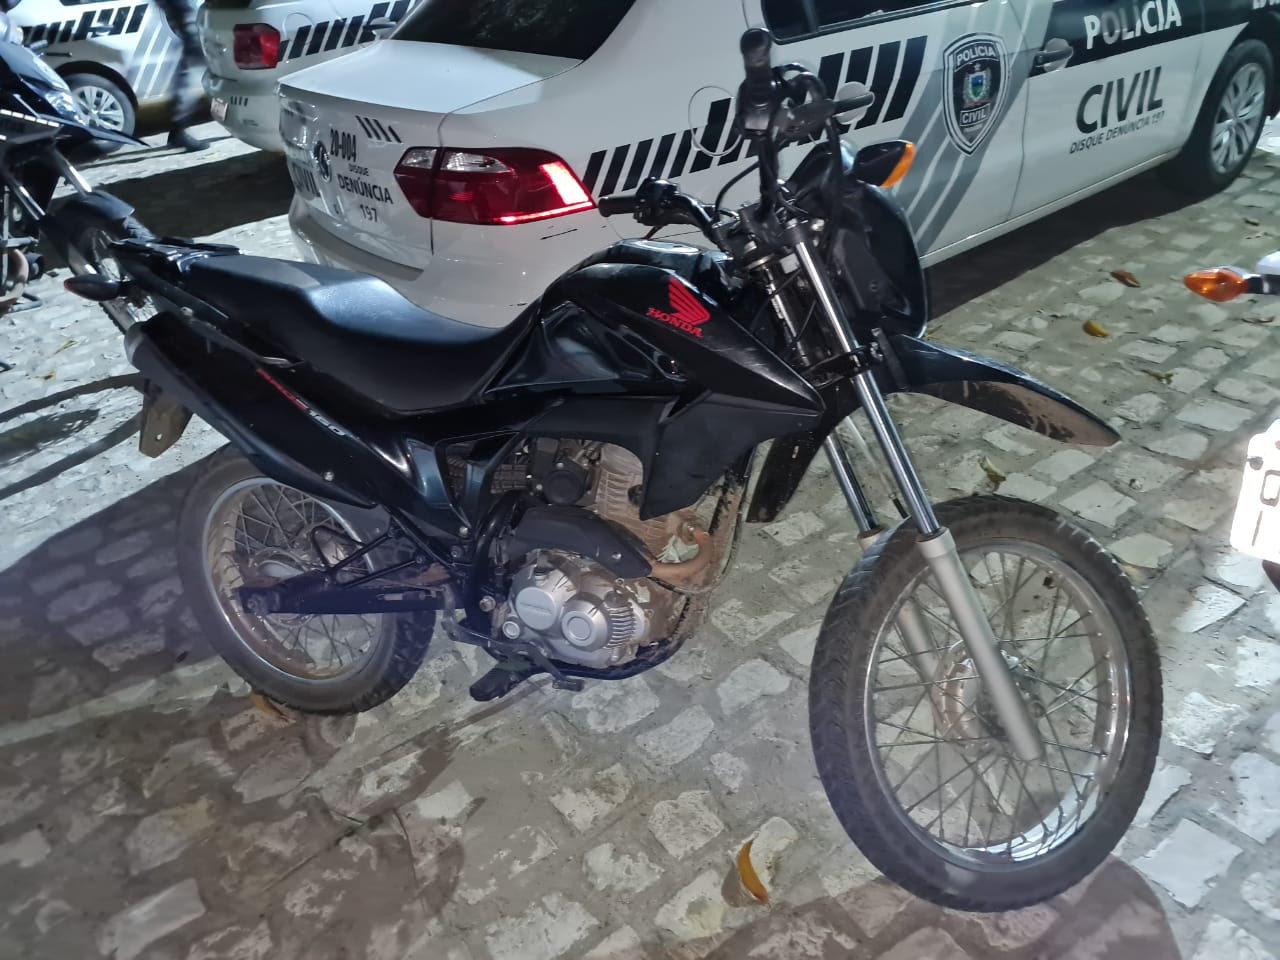 Motocicleta com restrição de roubo apreendida na delegacia em Cajazeiras